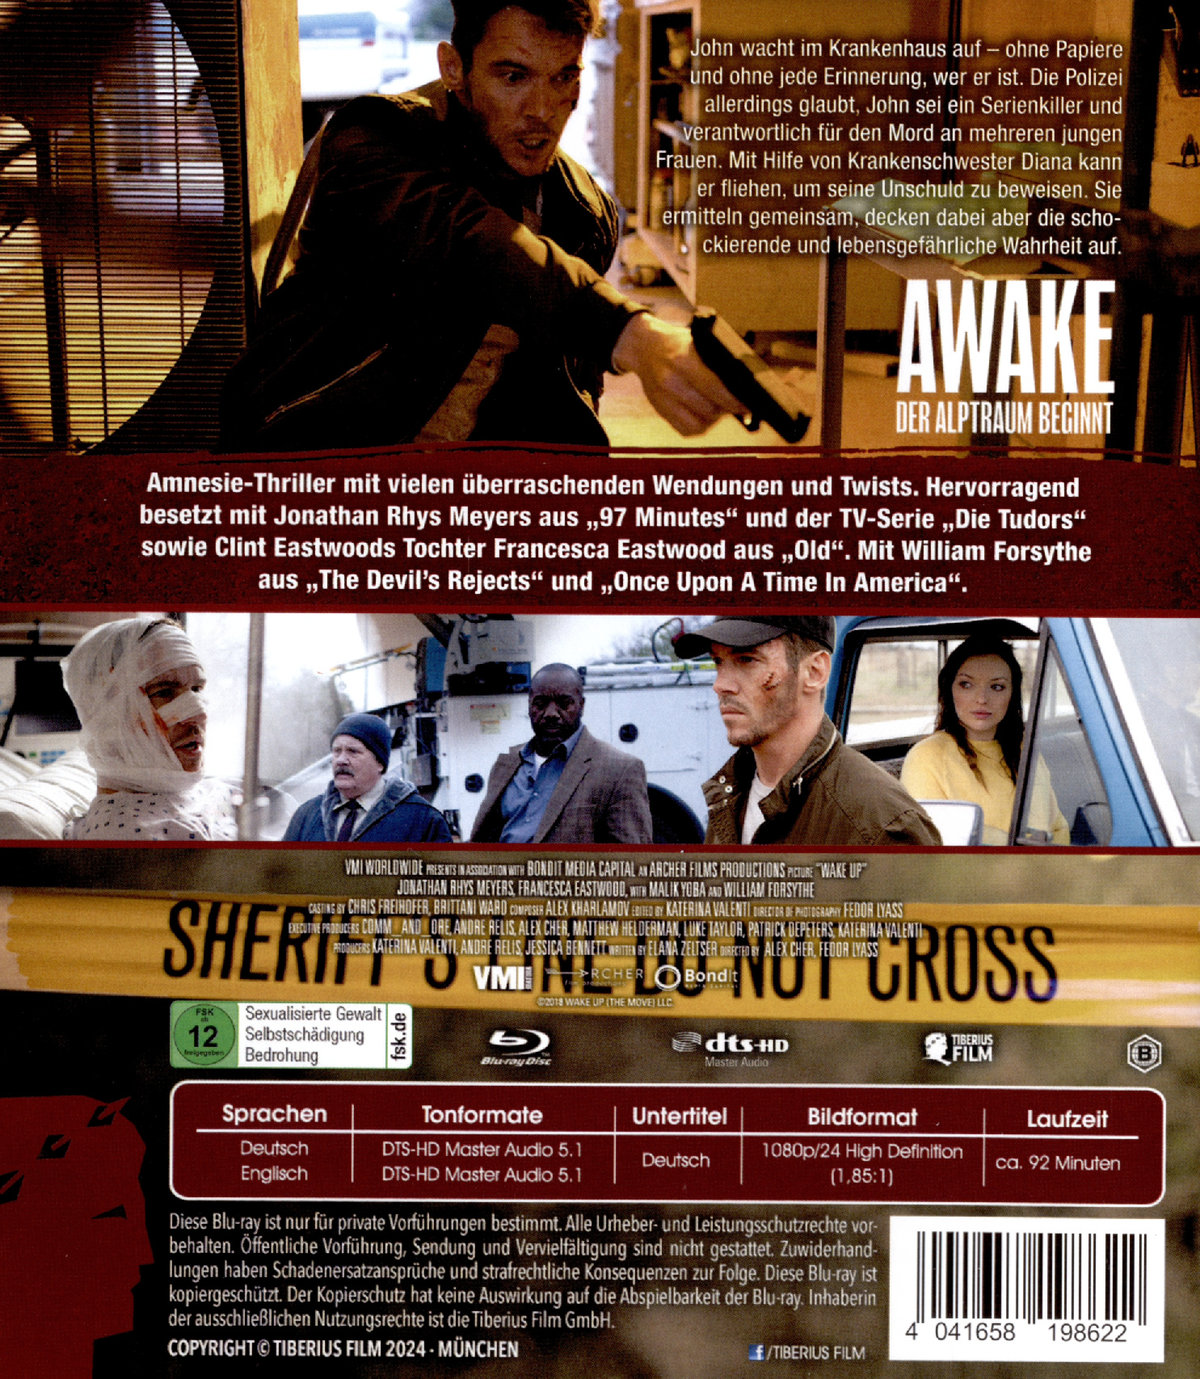 Awake - Der Alptraum beginnt  (Blu-ray Disc)